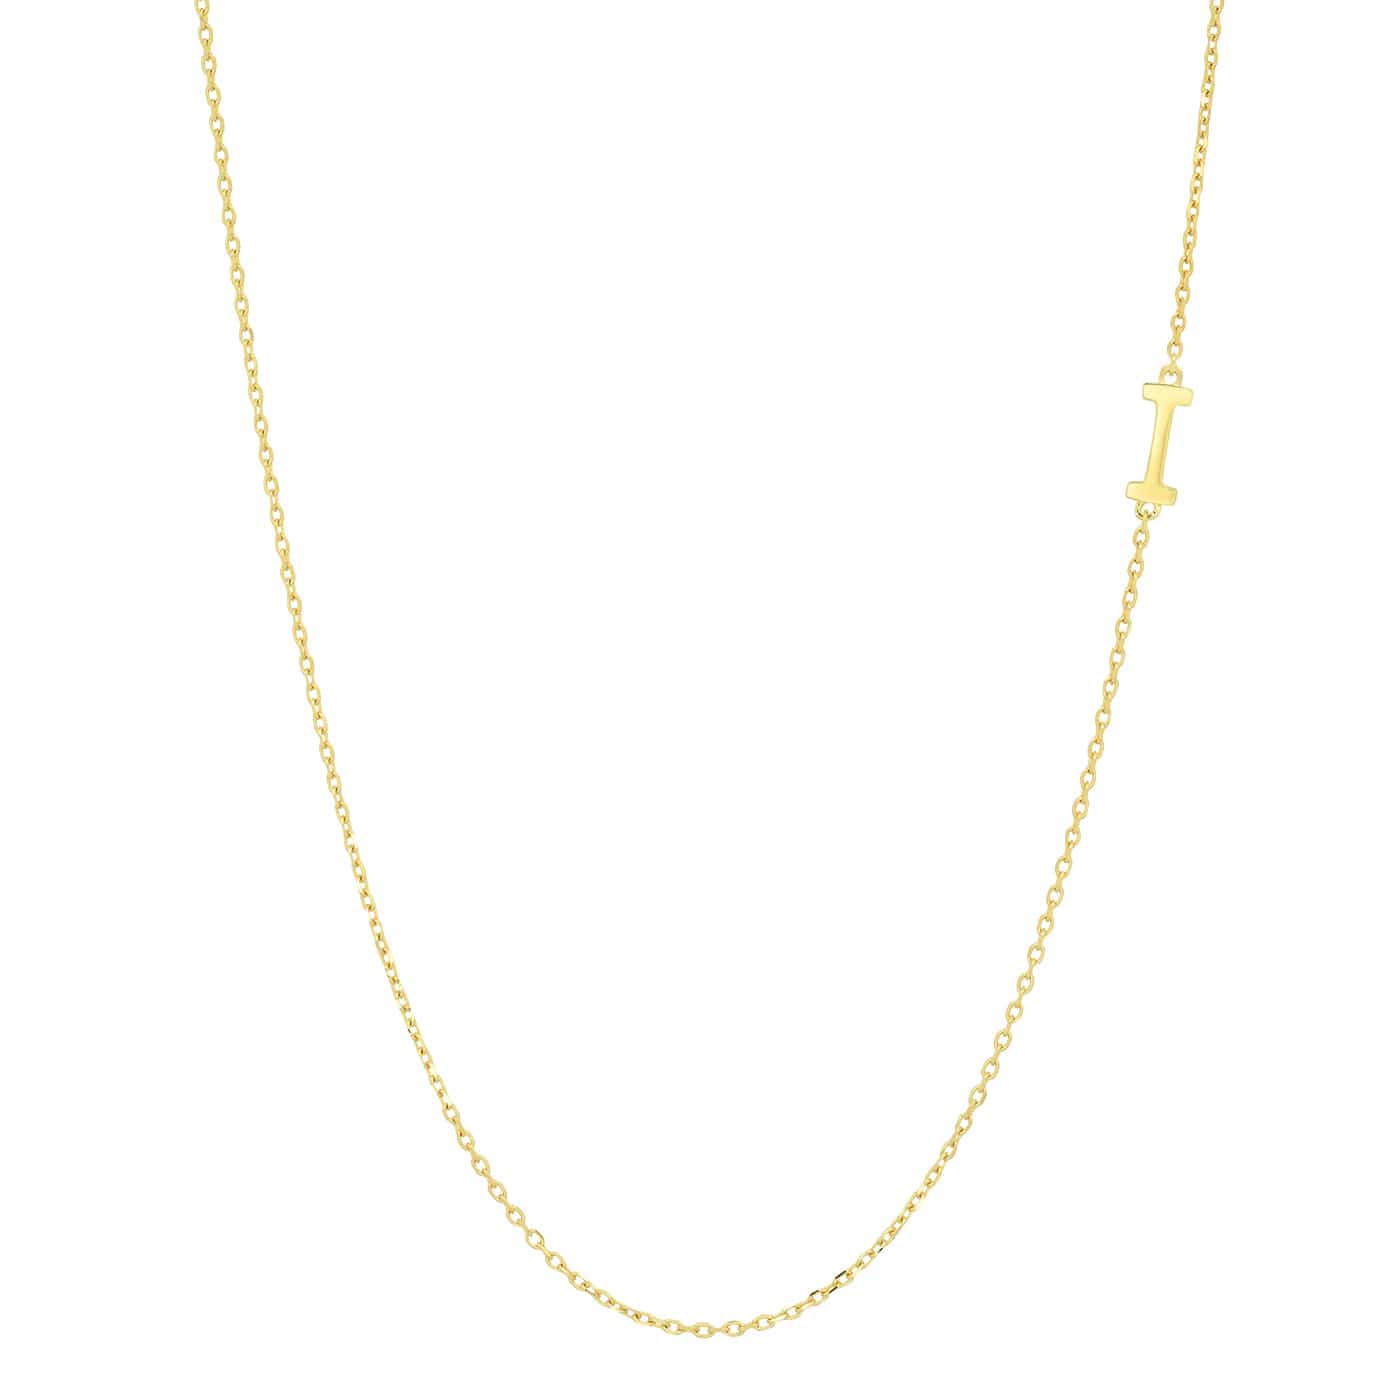 TAI JEWELRY Necklace I 14k Sideways Monogram Necklace